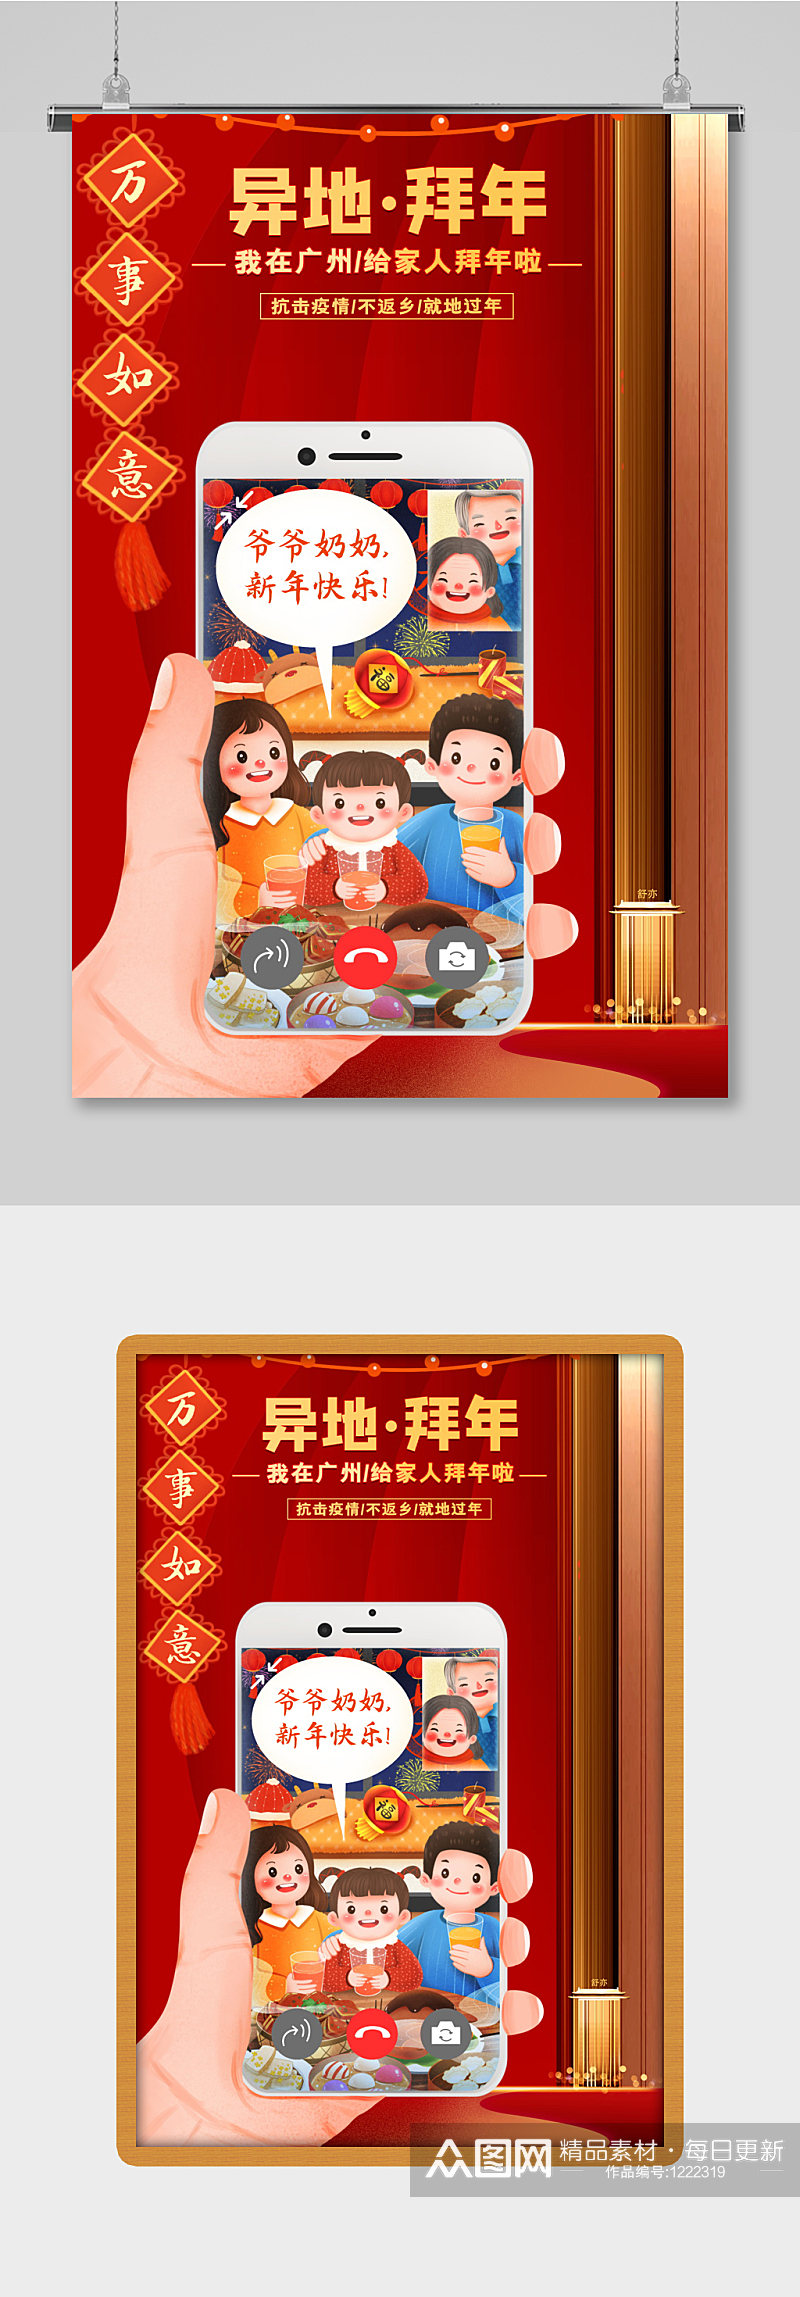 红色大气我在广州给您拜年了新年海报设计素材